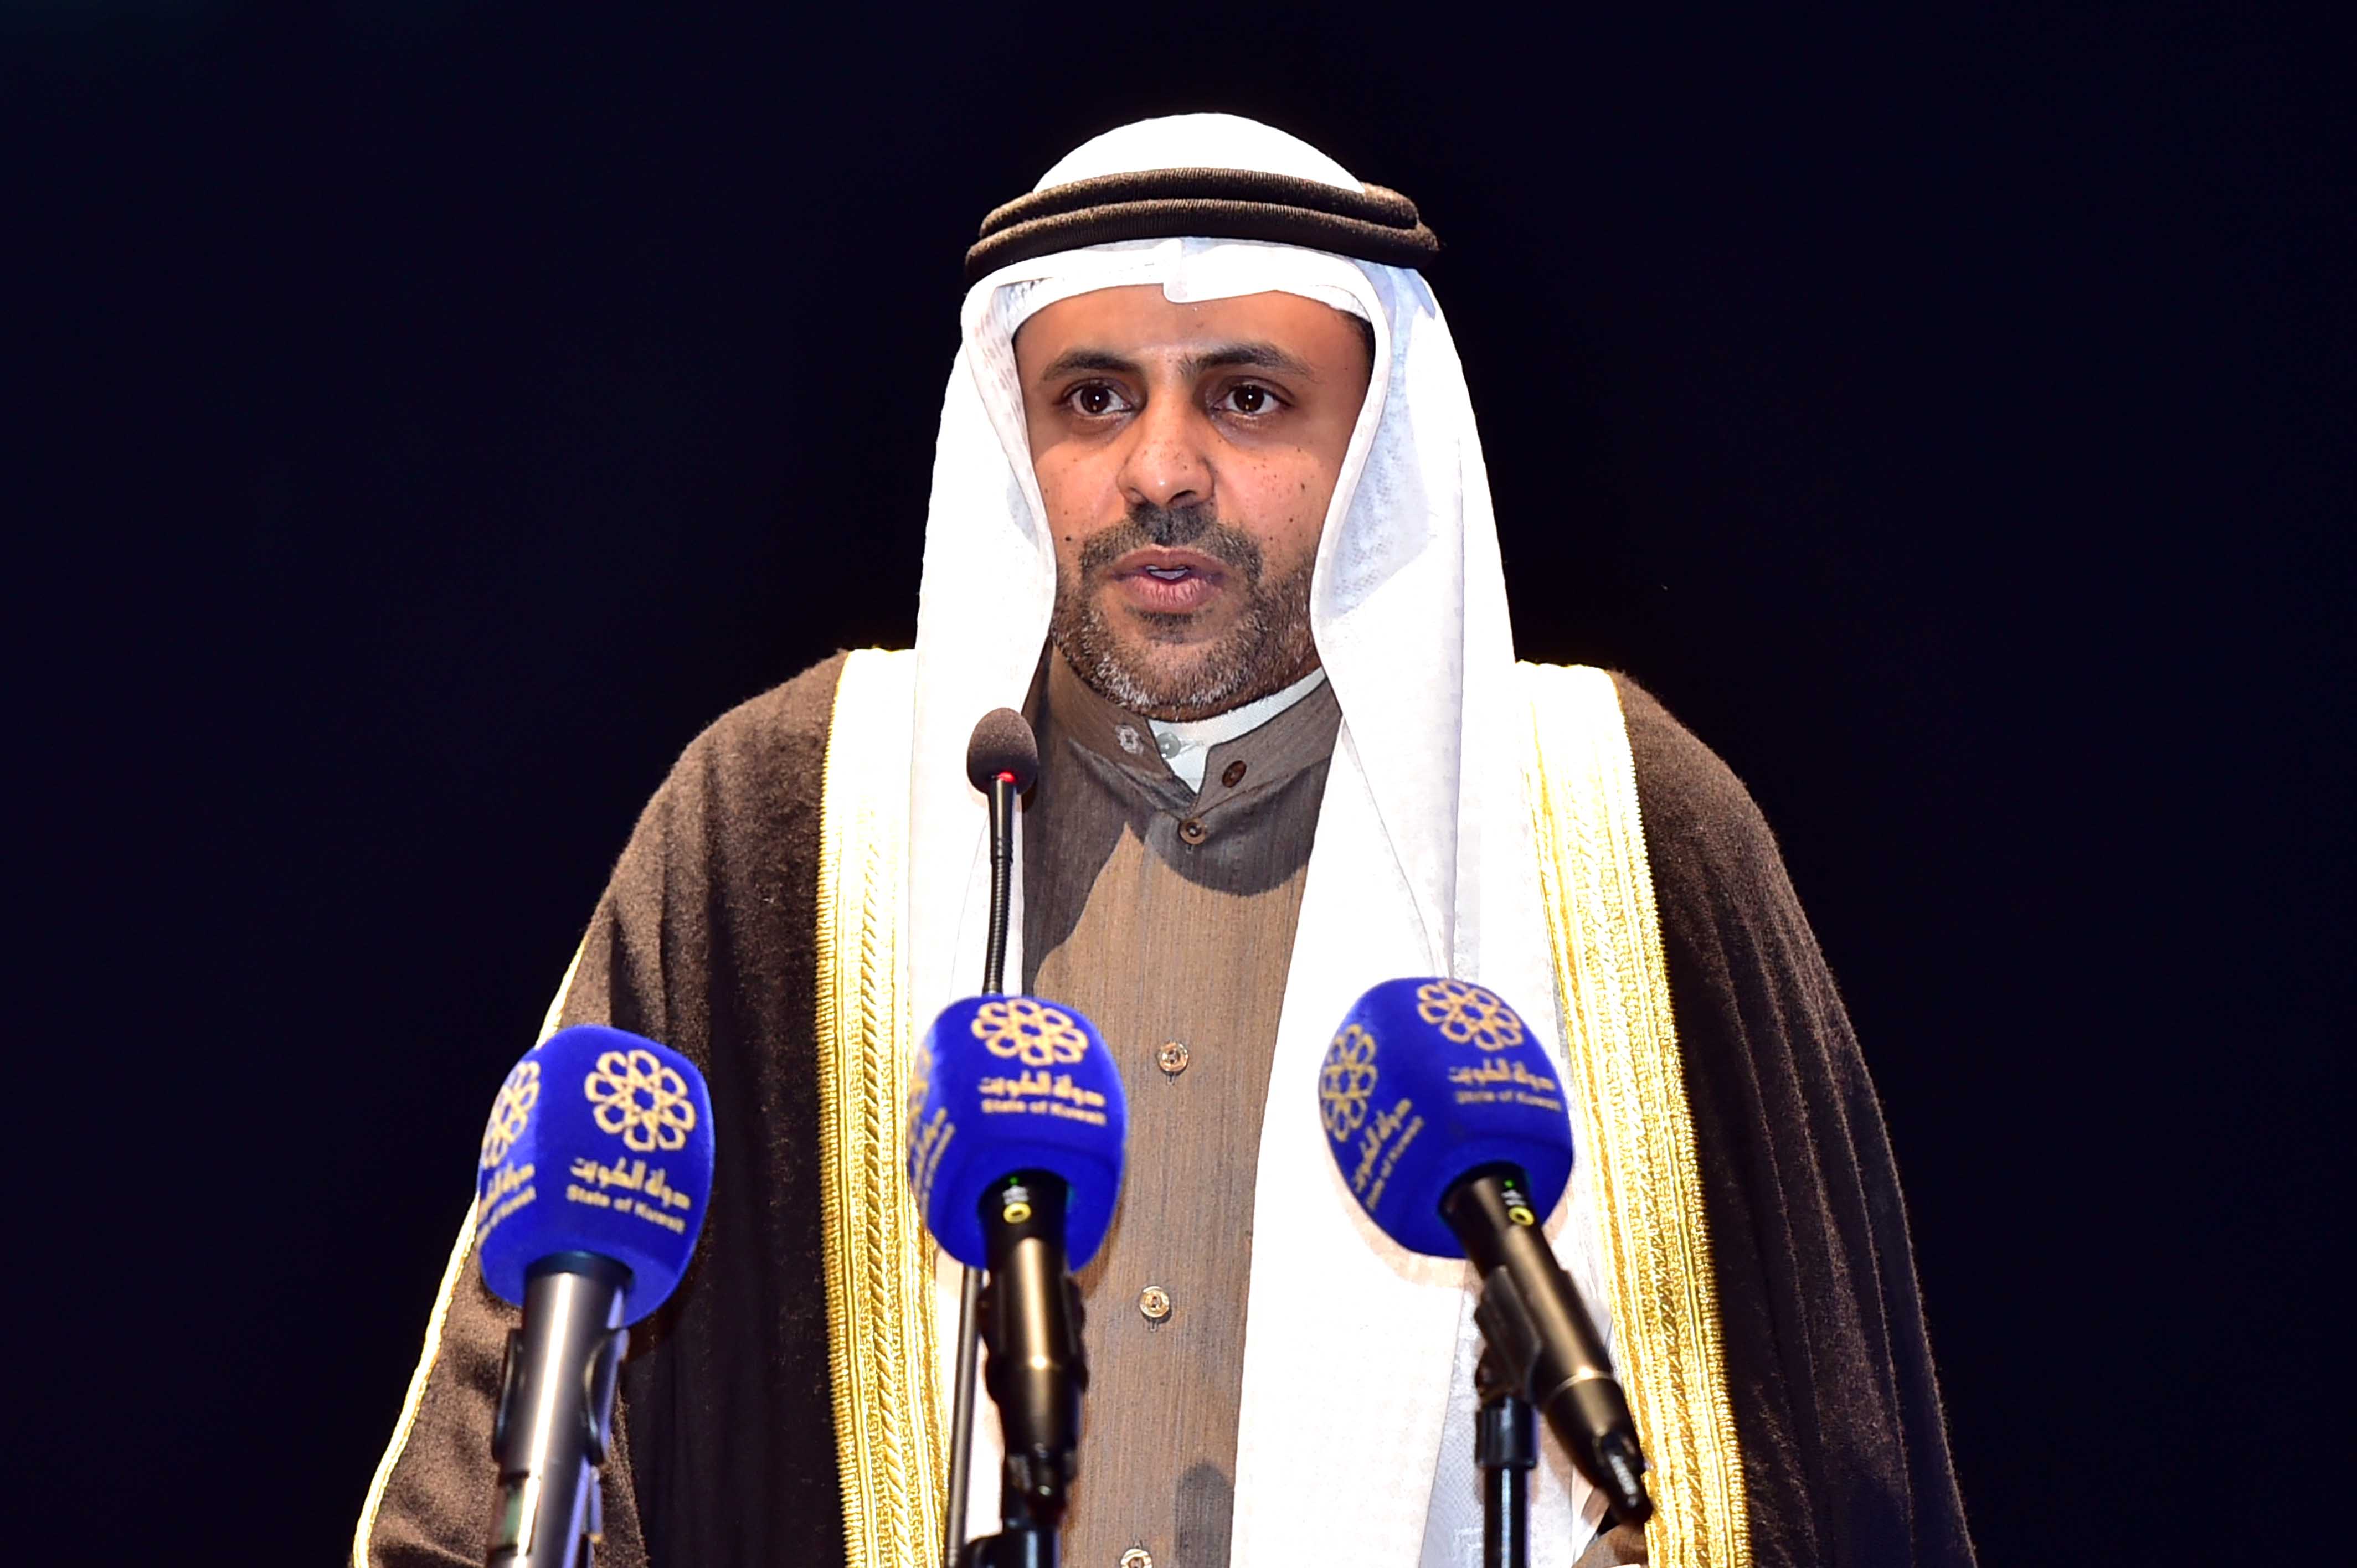 Minister of Information Mahammad Al-Jabri